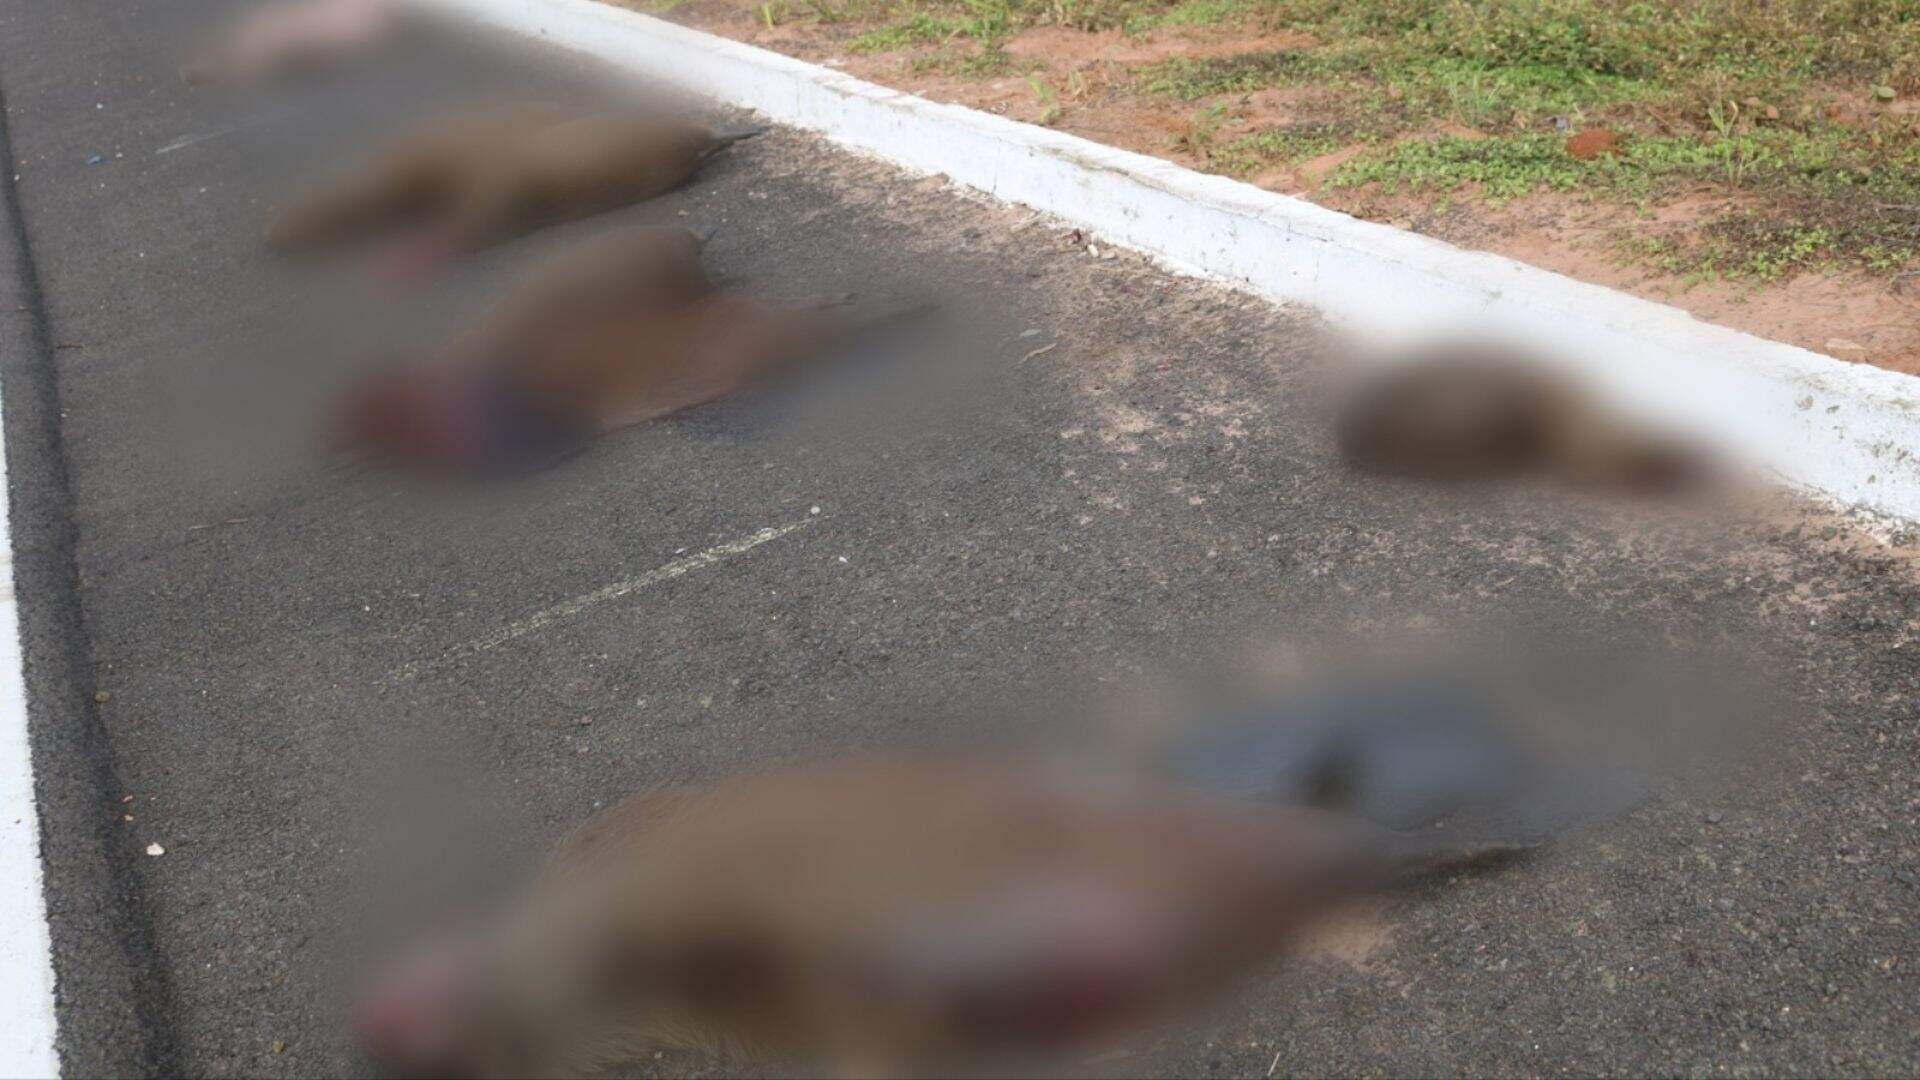 Nove capivaras são atropeladas e mortas de uma vez em rodovia de Mato Grosso do Sul